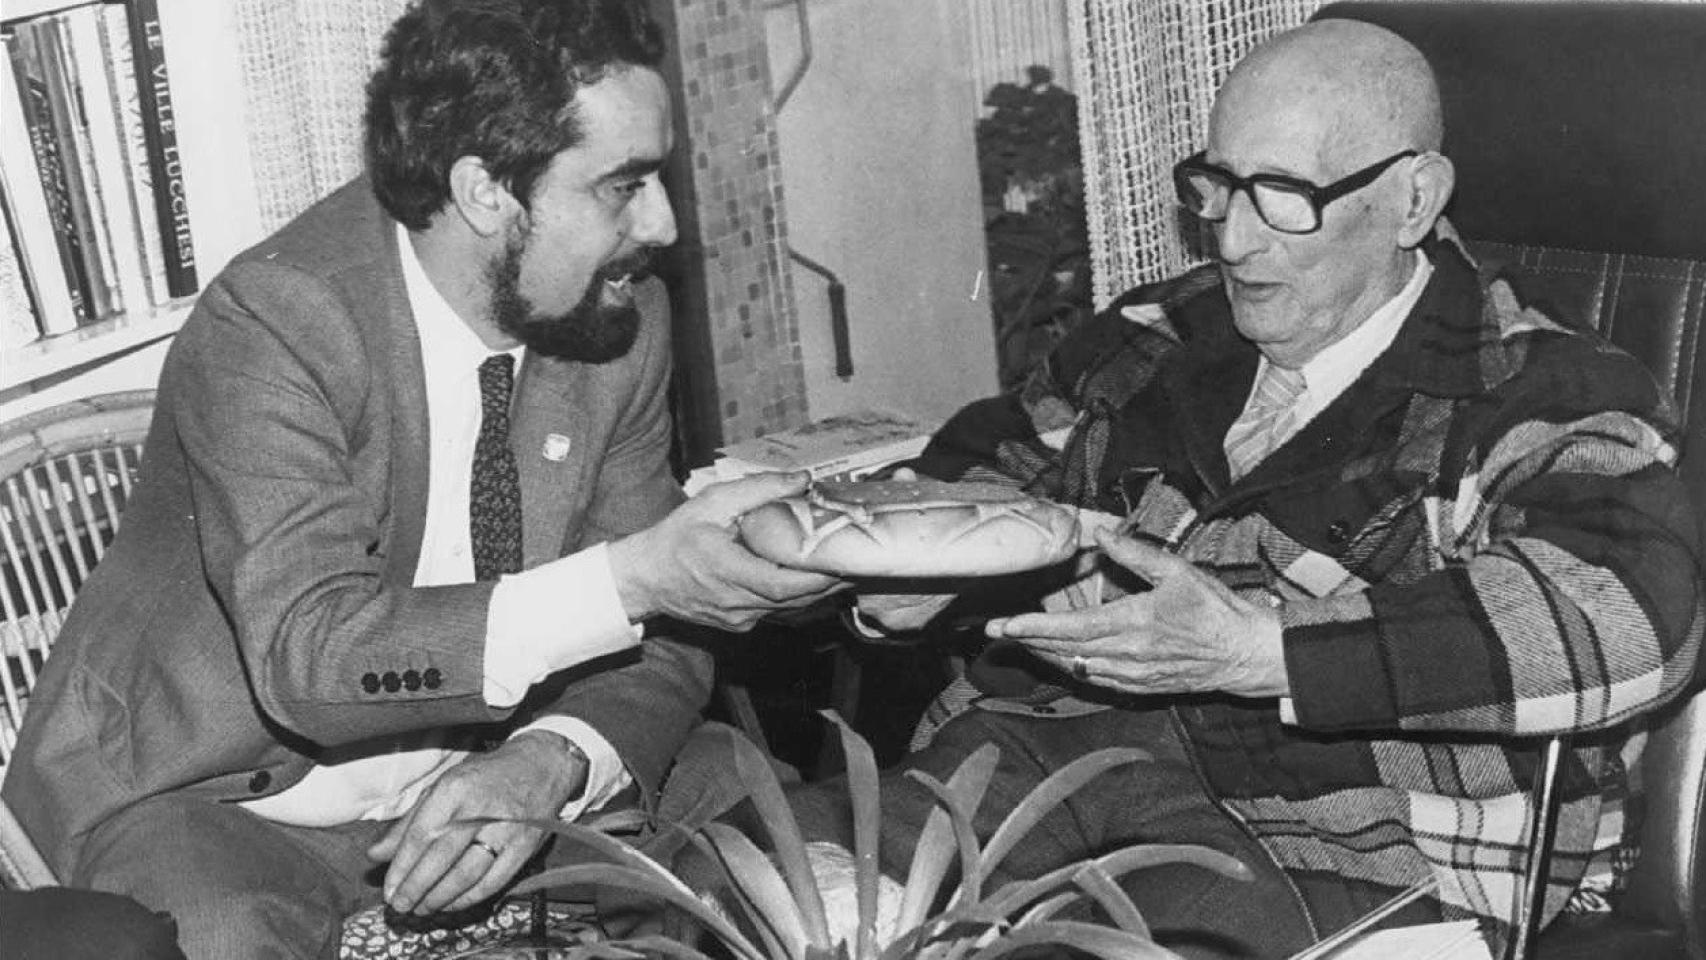 El exalcalde de Valladolid Tomás Rodríguez Bolaños (izquierda) visitó a Jorge Guillén (derecha) en su casa de Málaga en 1980